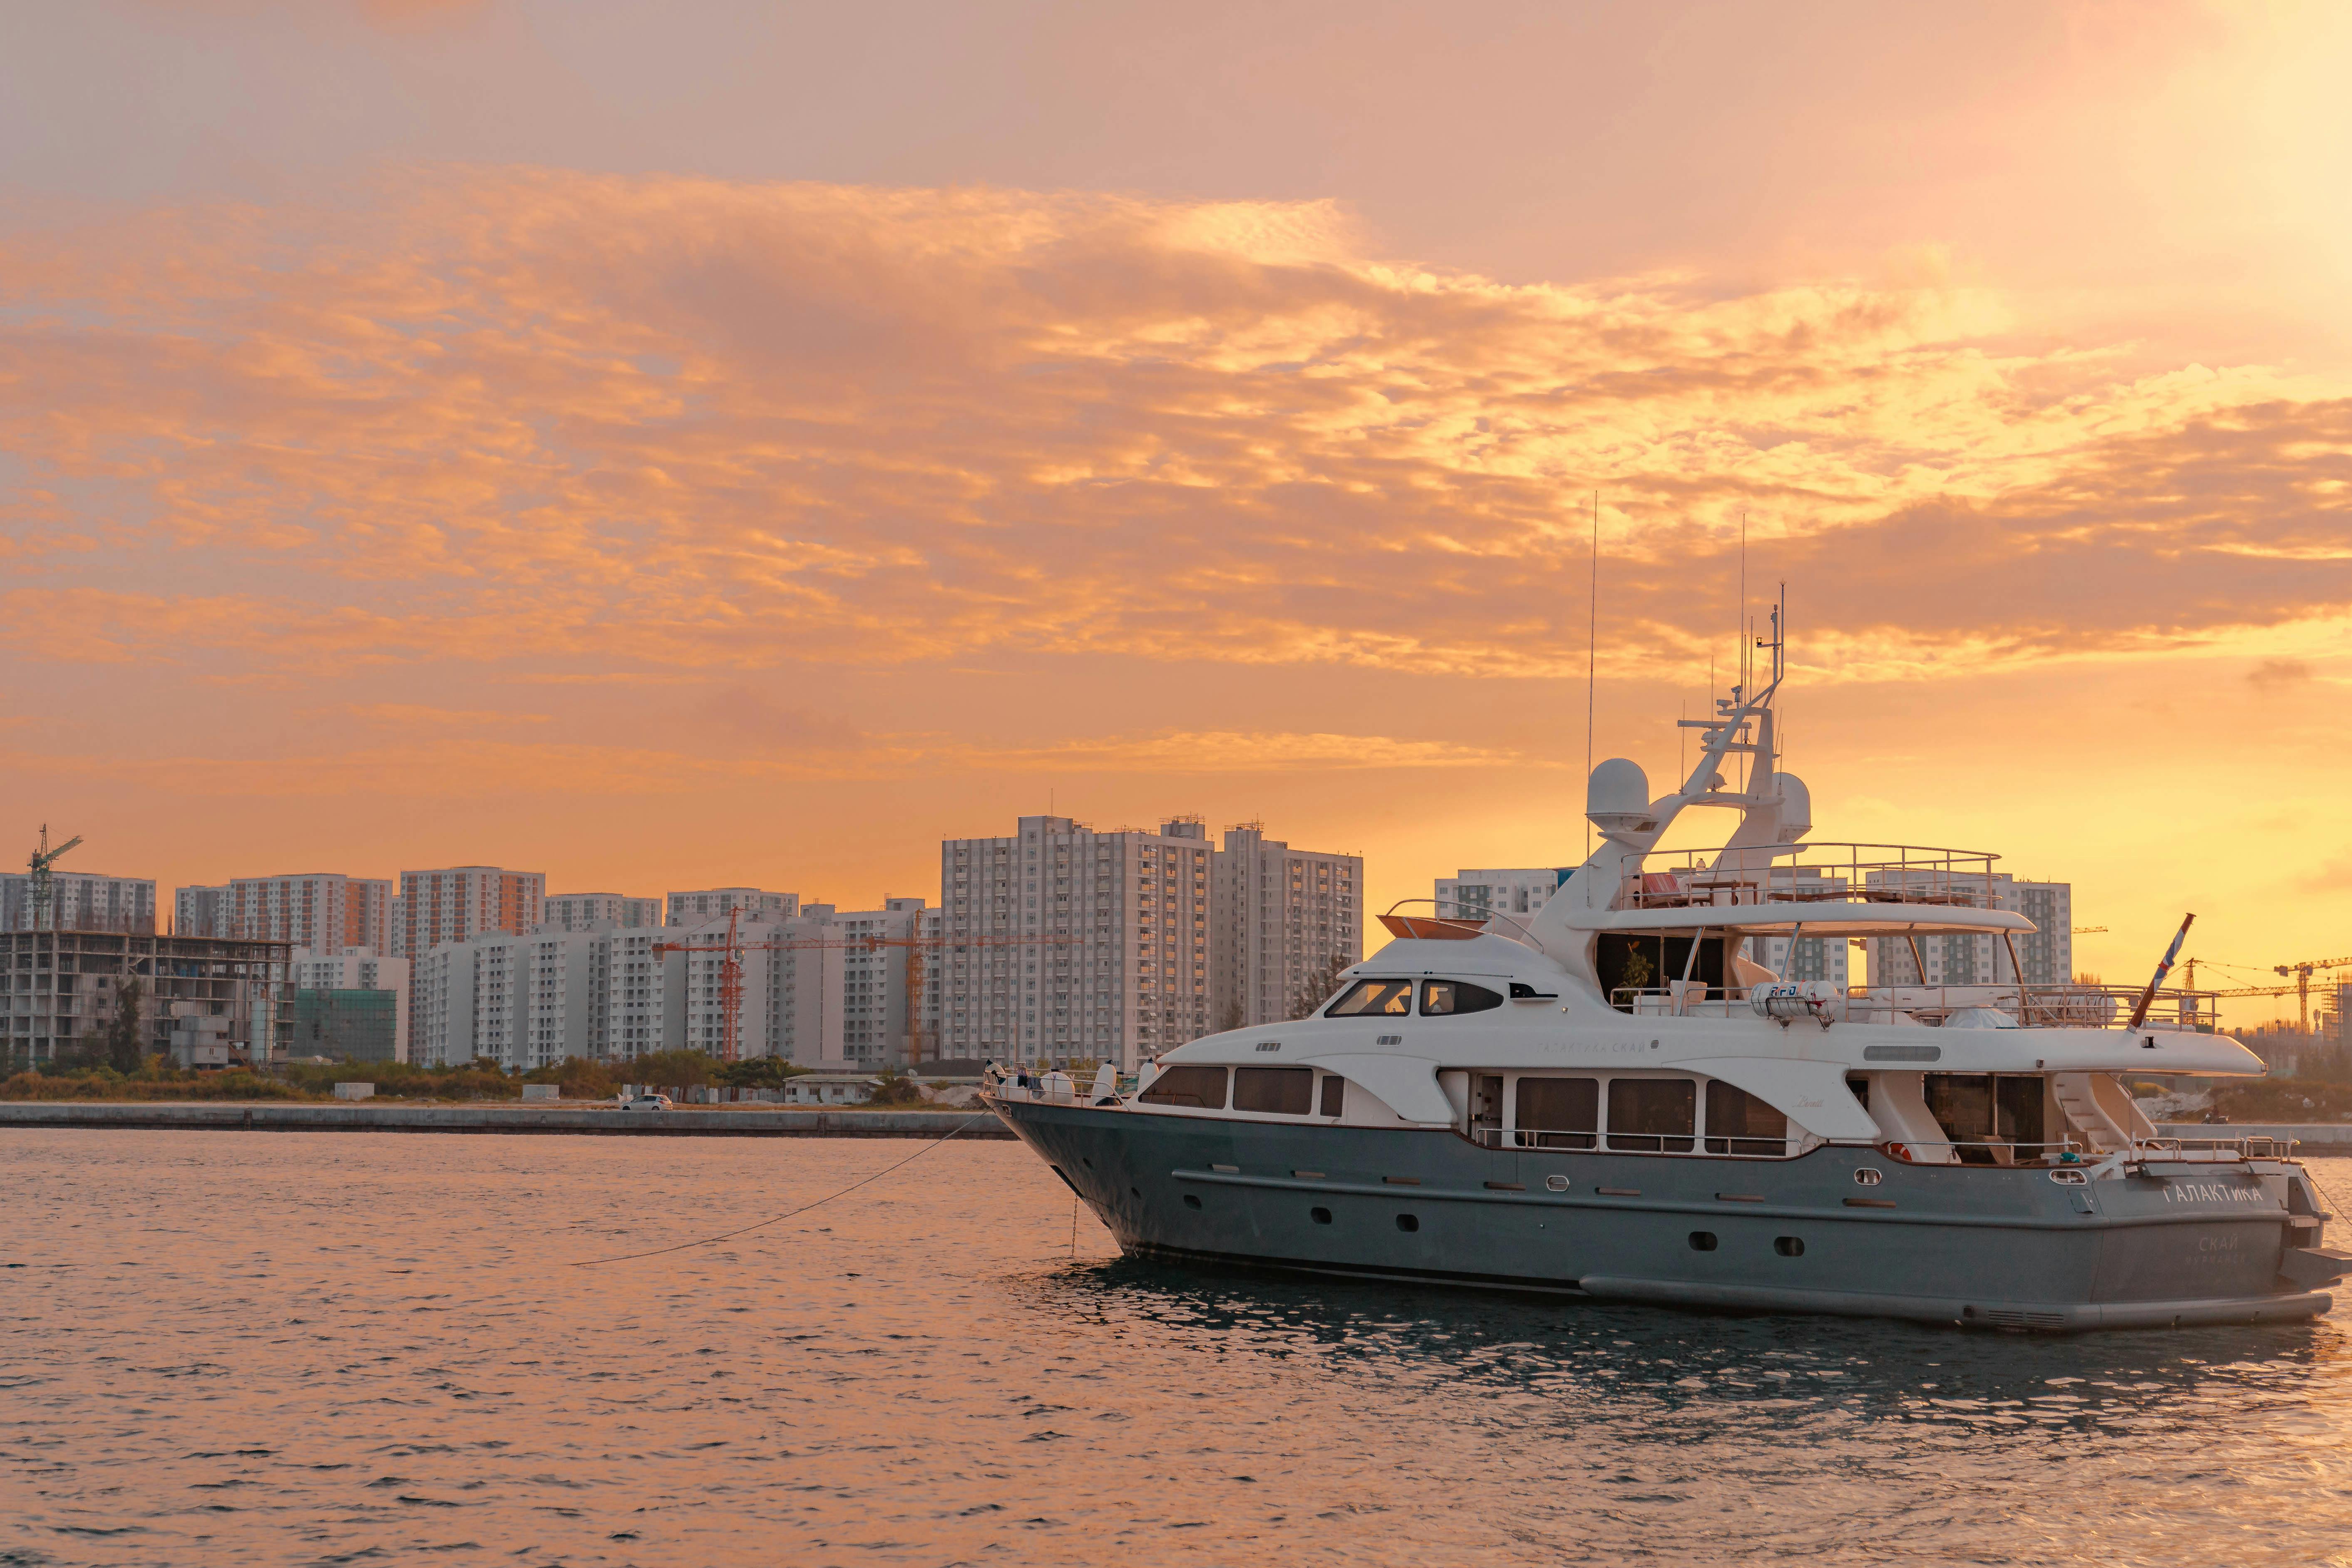 Luxury Yacht Sailing at Sunset · Free Stock Photo